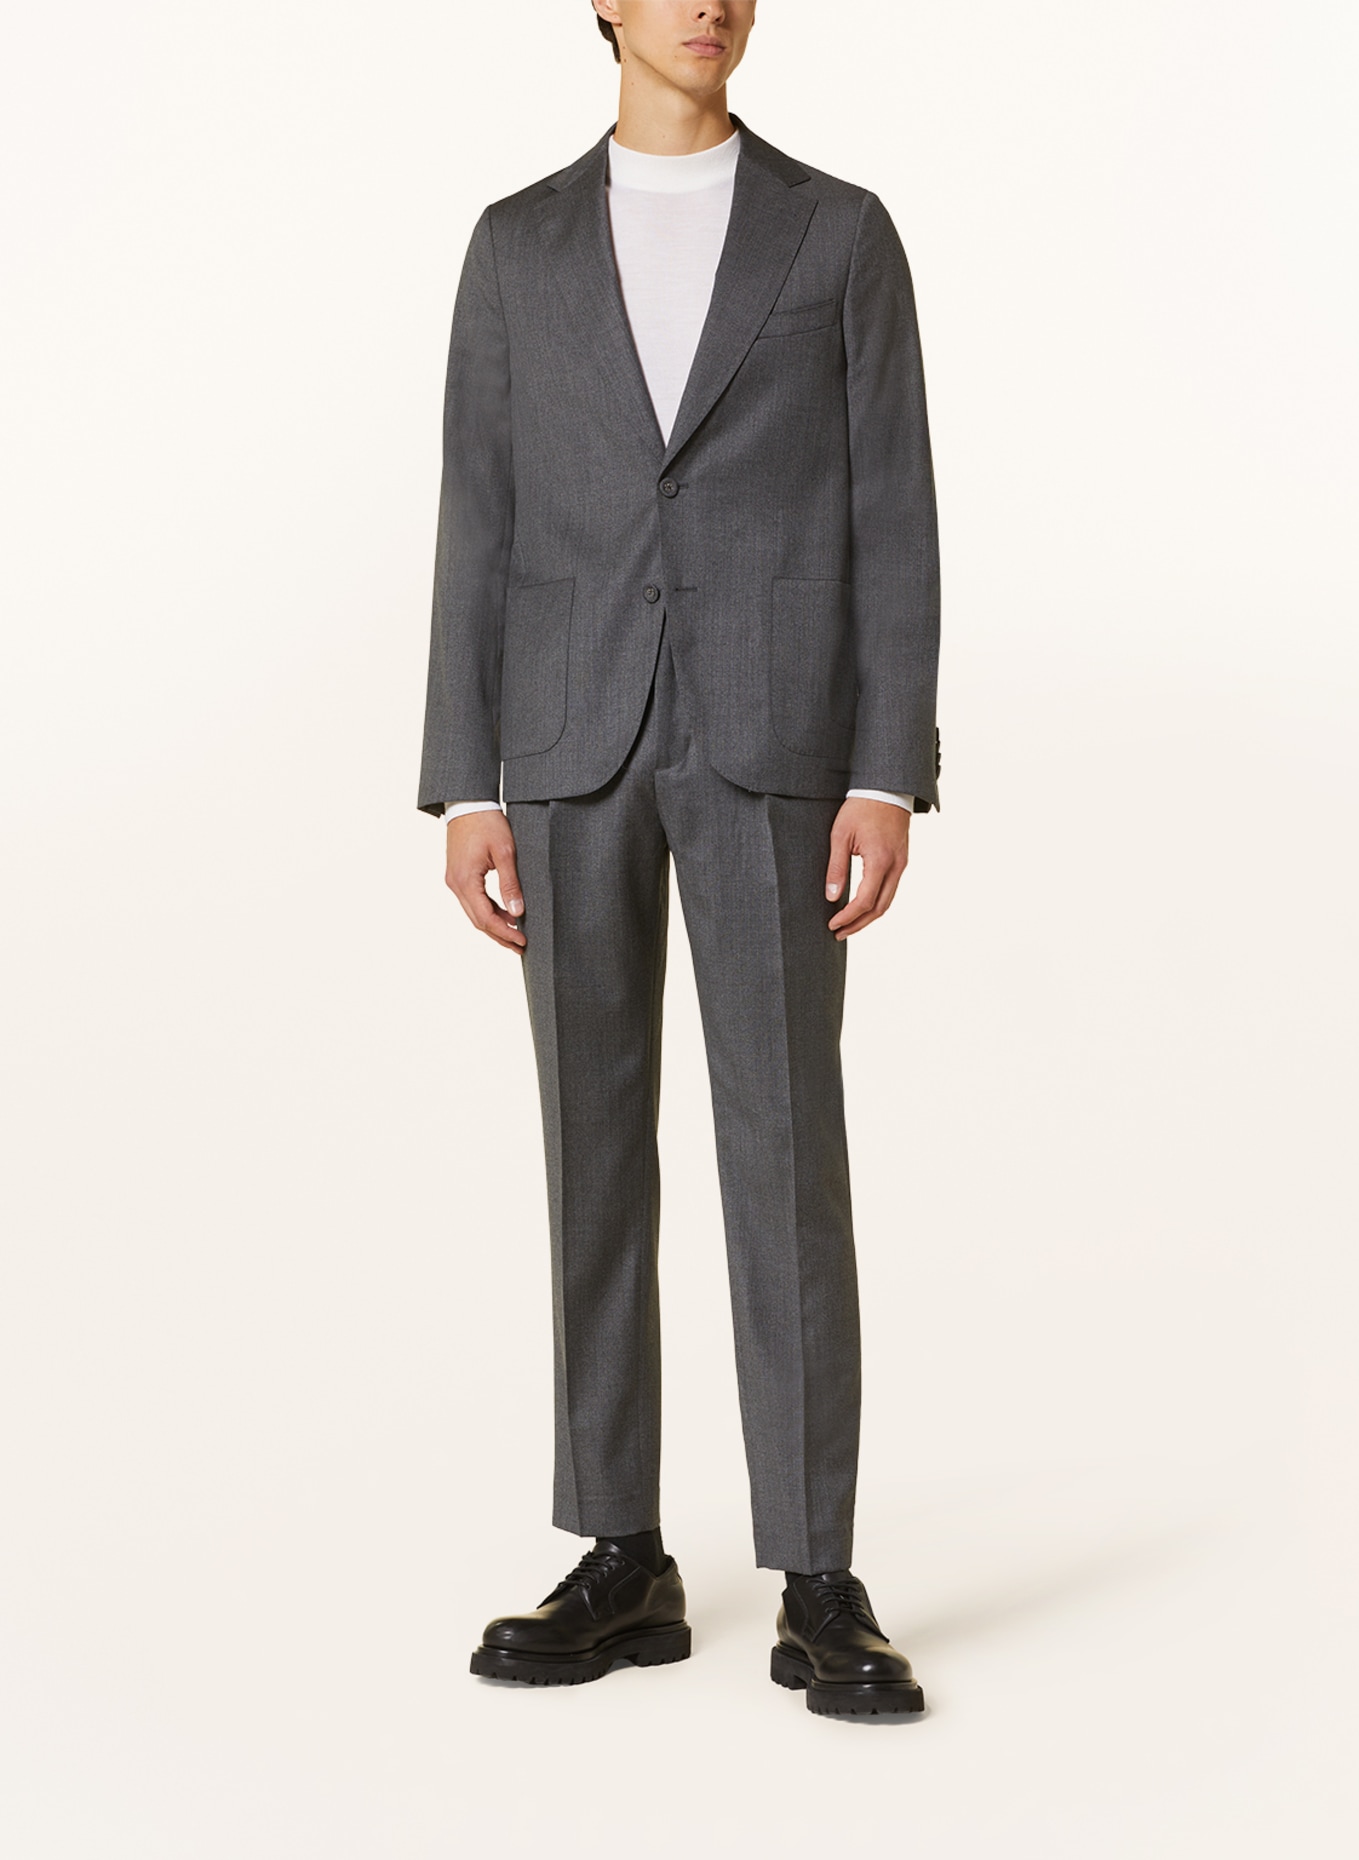 Officine Générale Suit jacket ARTHUS regular fit, Color: MIDGREY (Image 2)